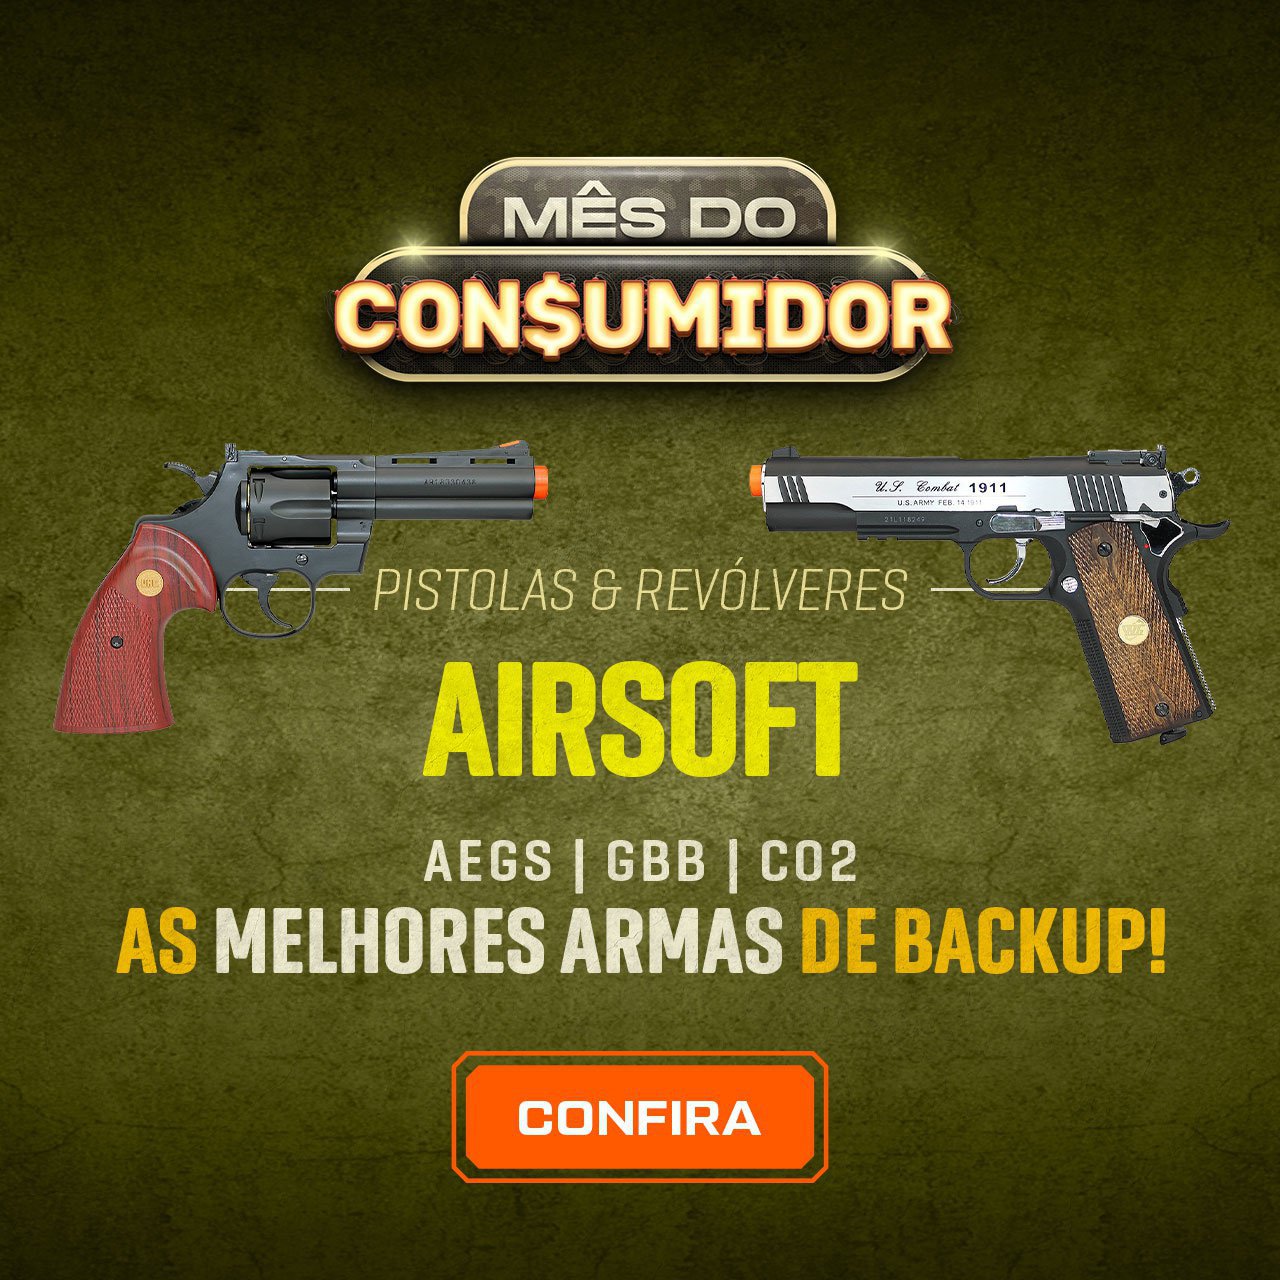 Pistolas & Revolveres Airsoft - AEGs - GBB - CO2 - As melhores Armas de Backup!